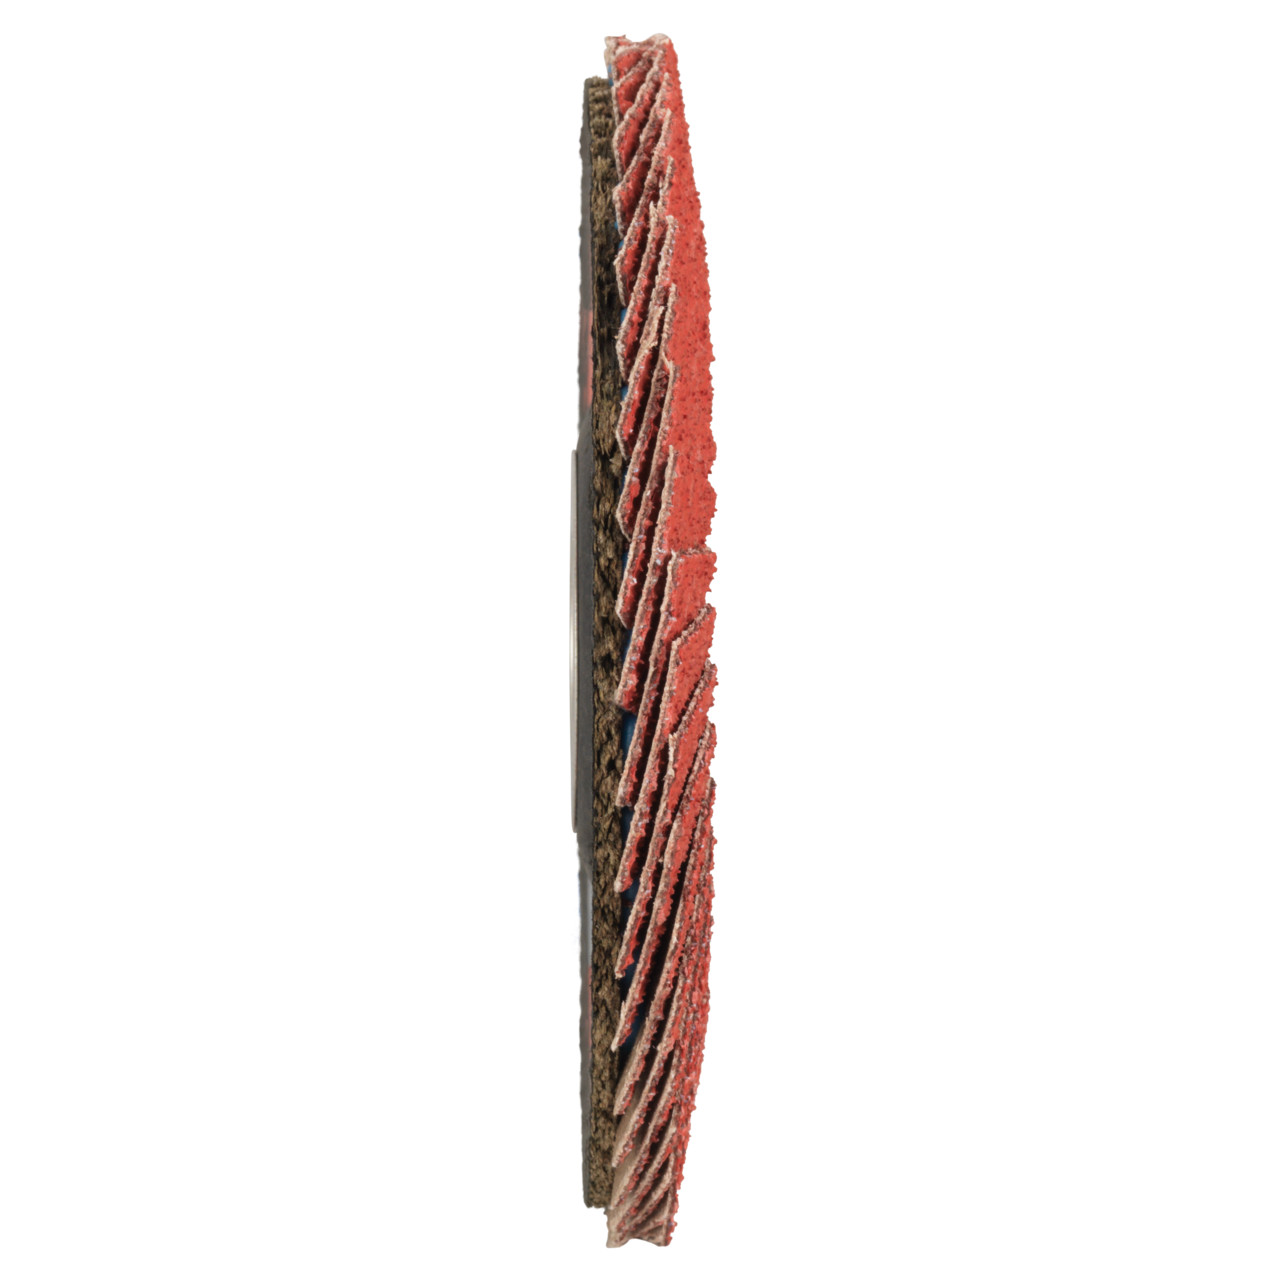 Tyrolit Arandela dentada DxH 178x22,23 CERÁMICA para acero inoxidable, P60, forma: 27A - diseño acodado (diseño del cuerpo portador de fibra de vidrio), Art. 34166685